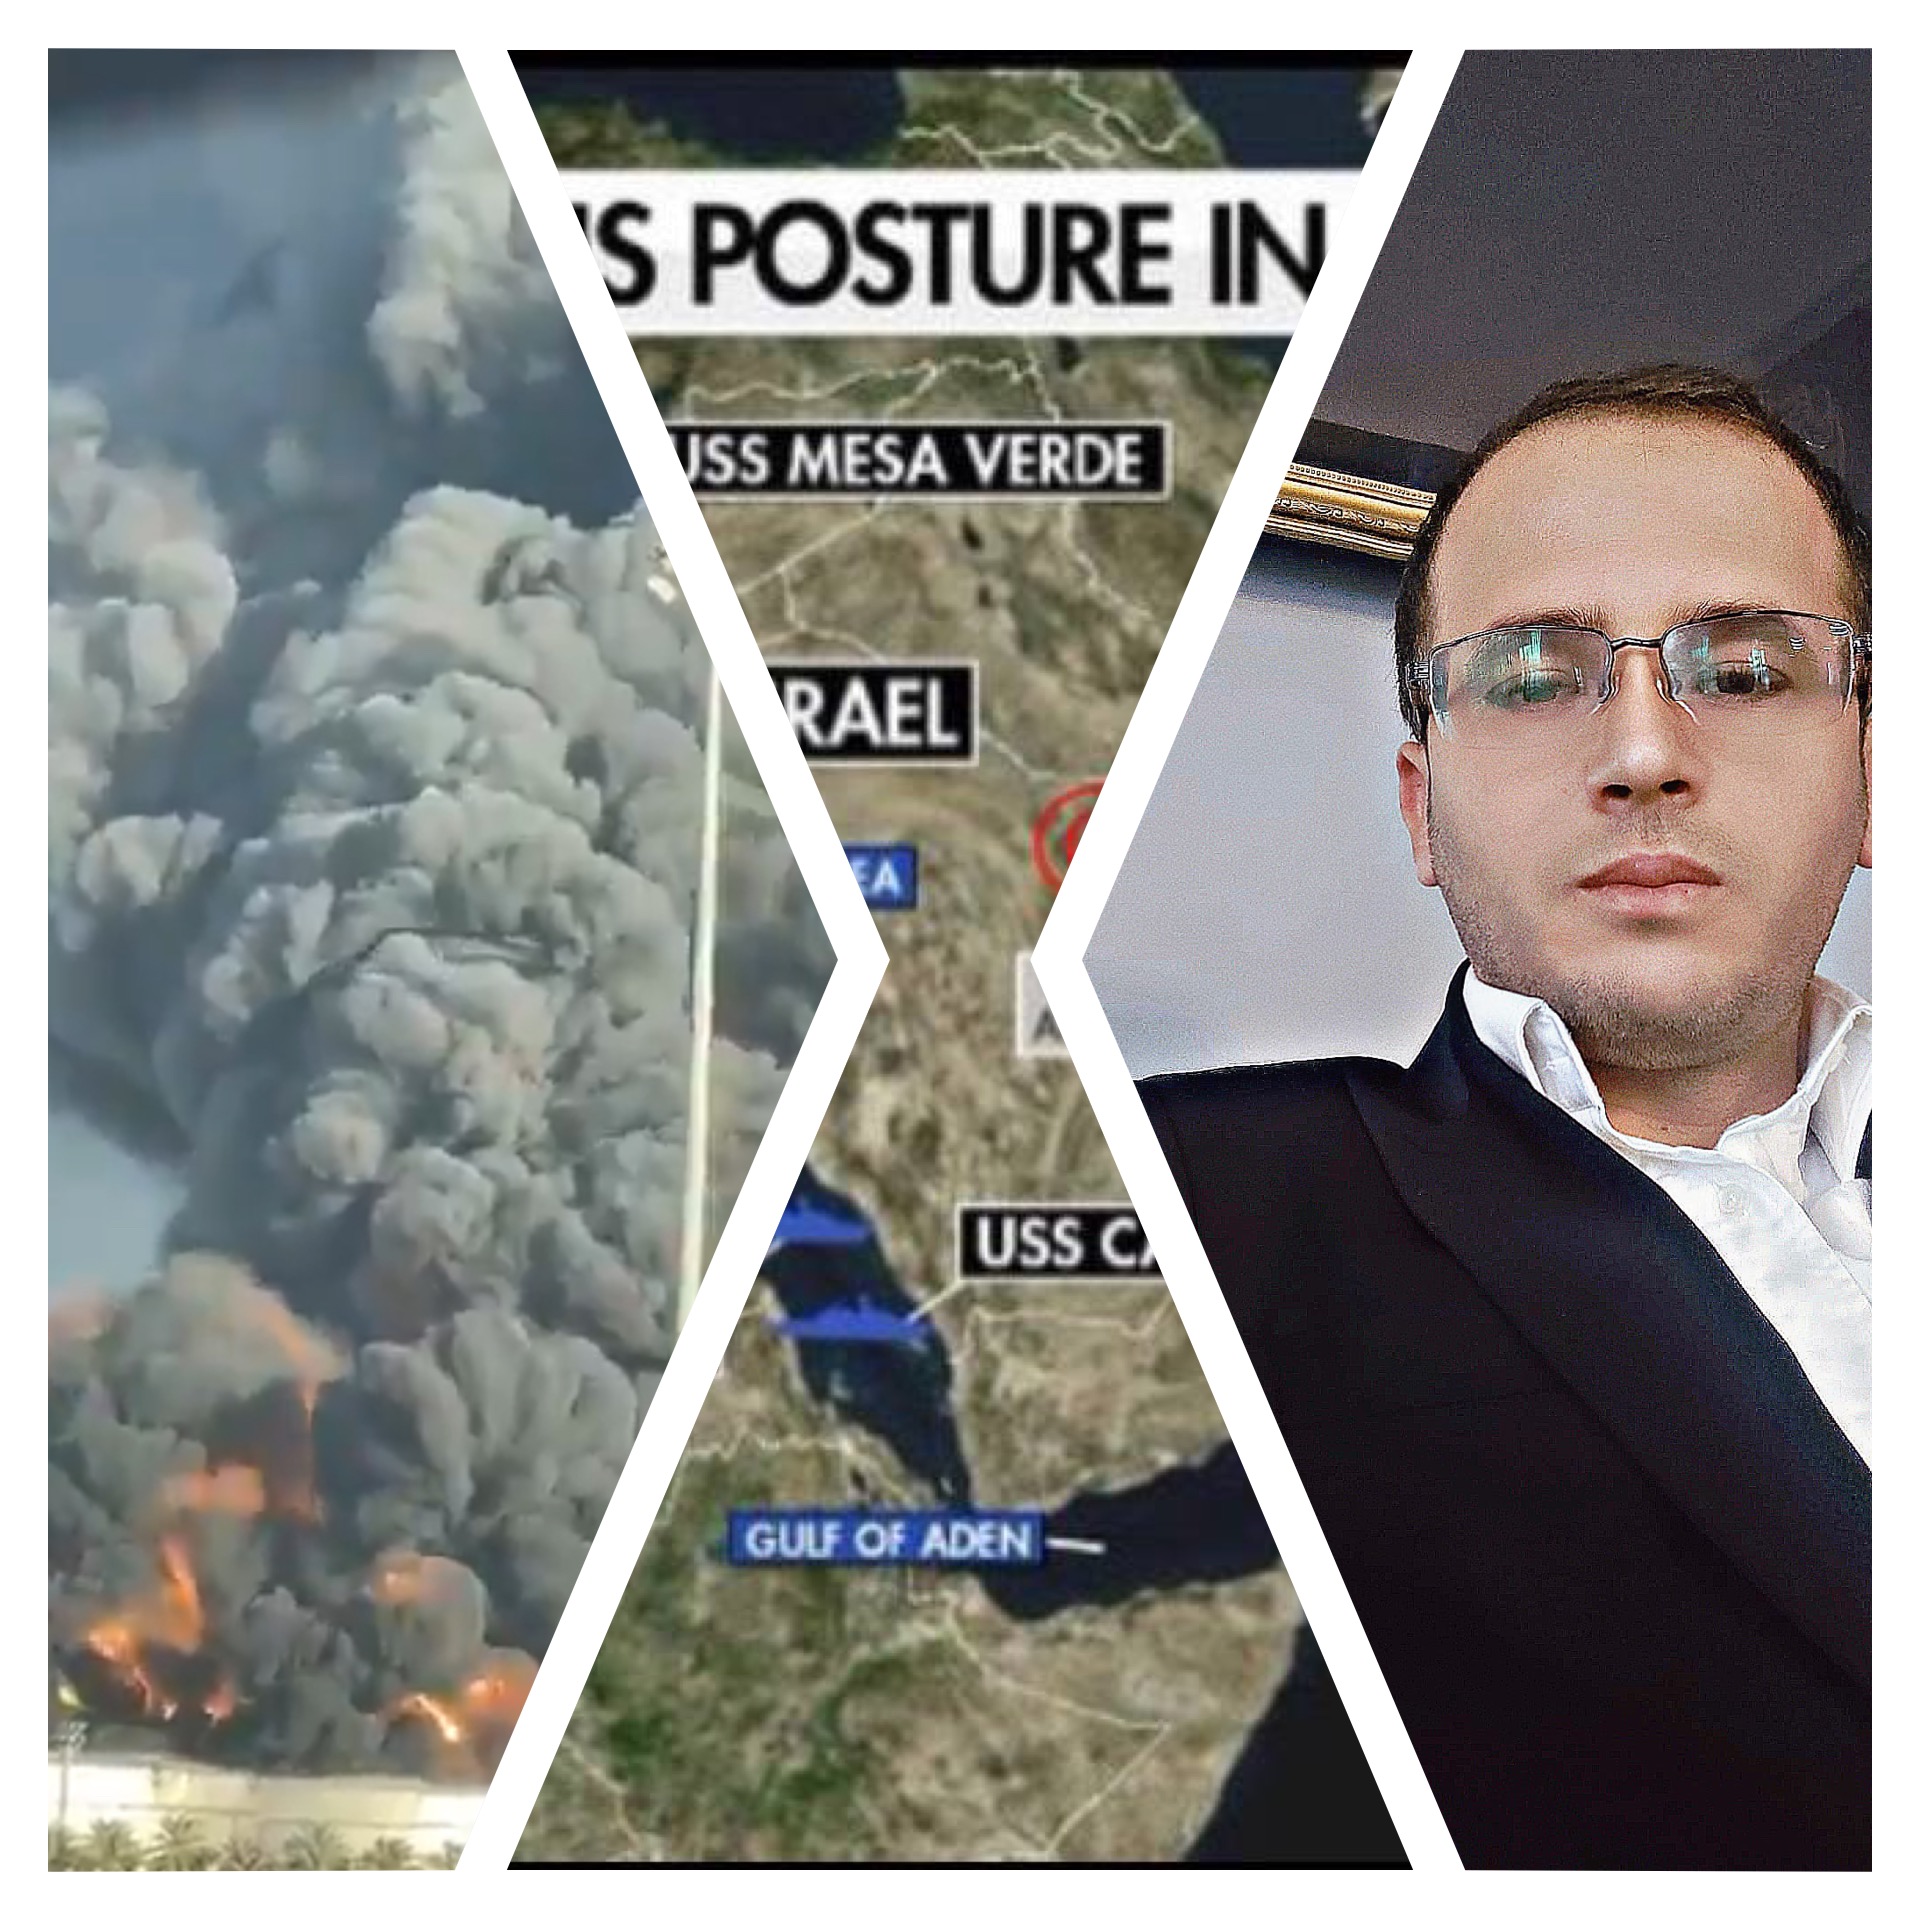 الكاتب الصحفي احمد الحسين يكتب  : اليمن يفرض كلمته في حرب غزة "